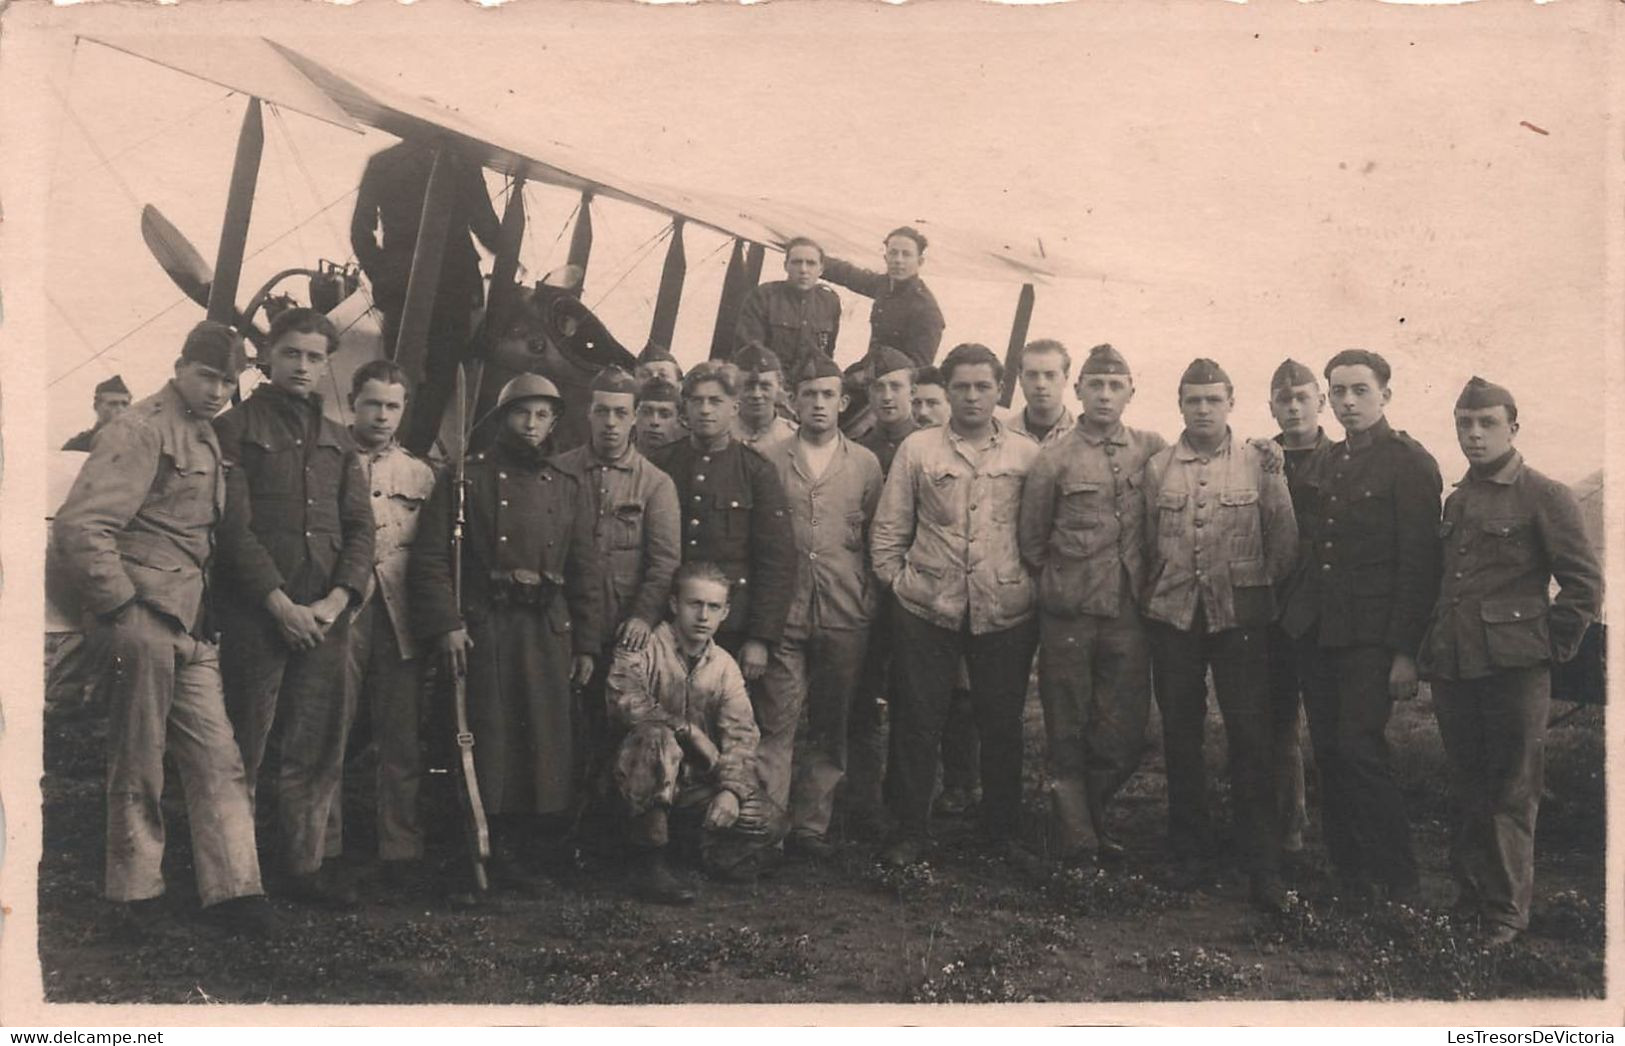 Photographie - Militaria - Aviation - Avion Ancien Avec Soldat - Photo De Groupe - Carte Postale Ancienne - Fotografia